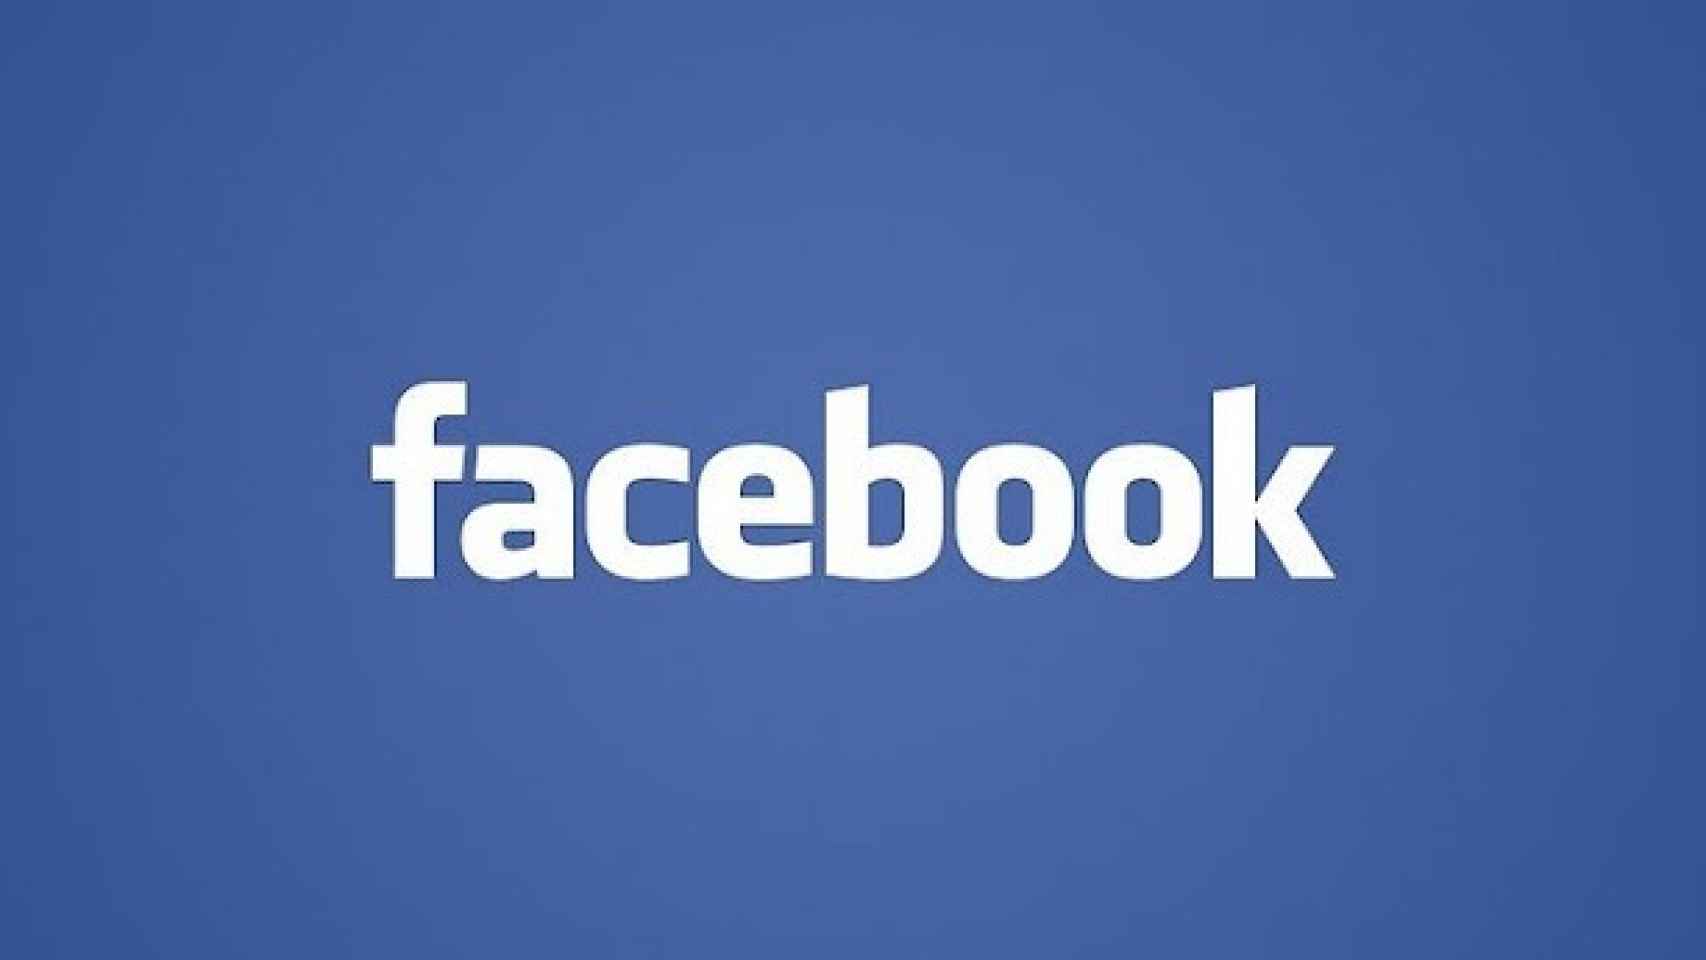 Facebook se actualiza: Chat integrado, más velocidad y acceso directo de cámara